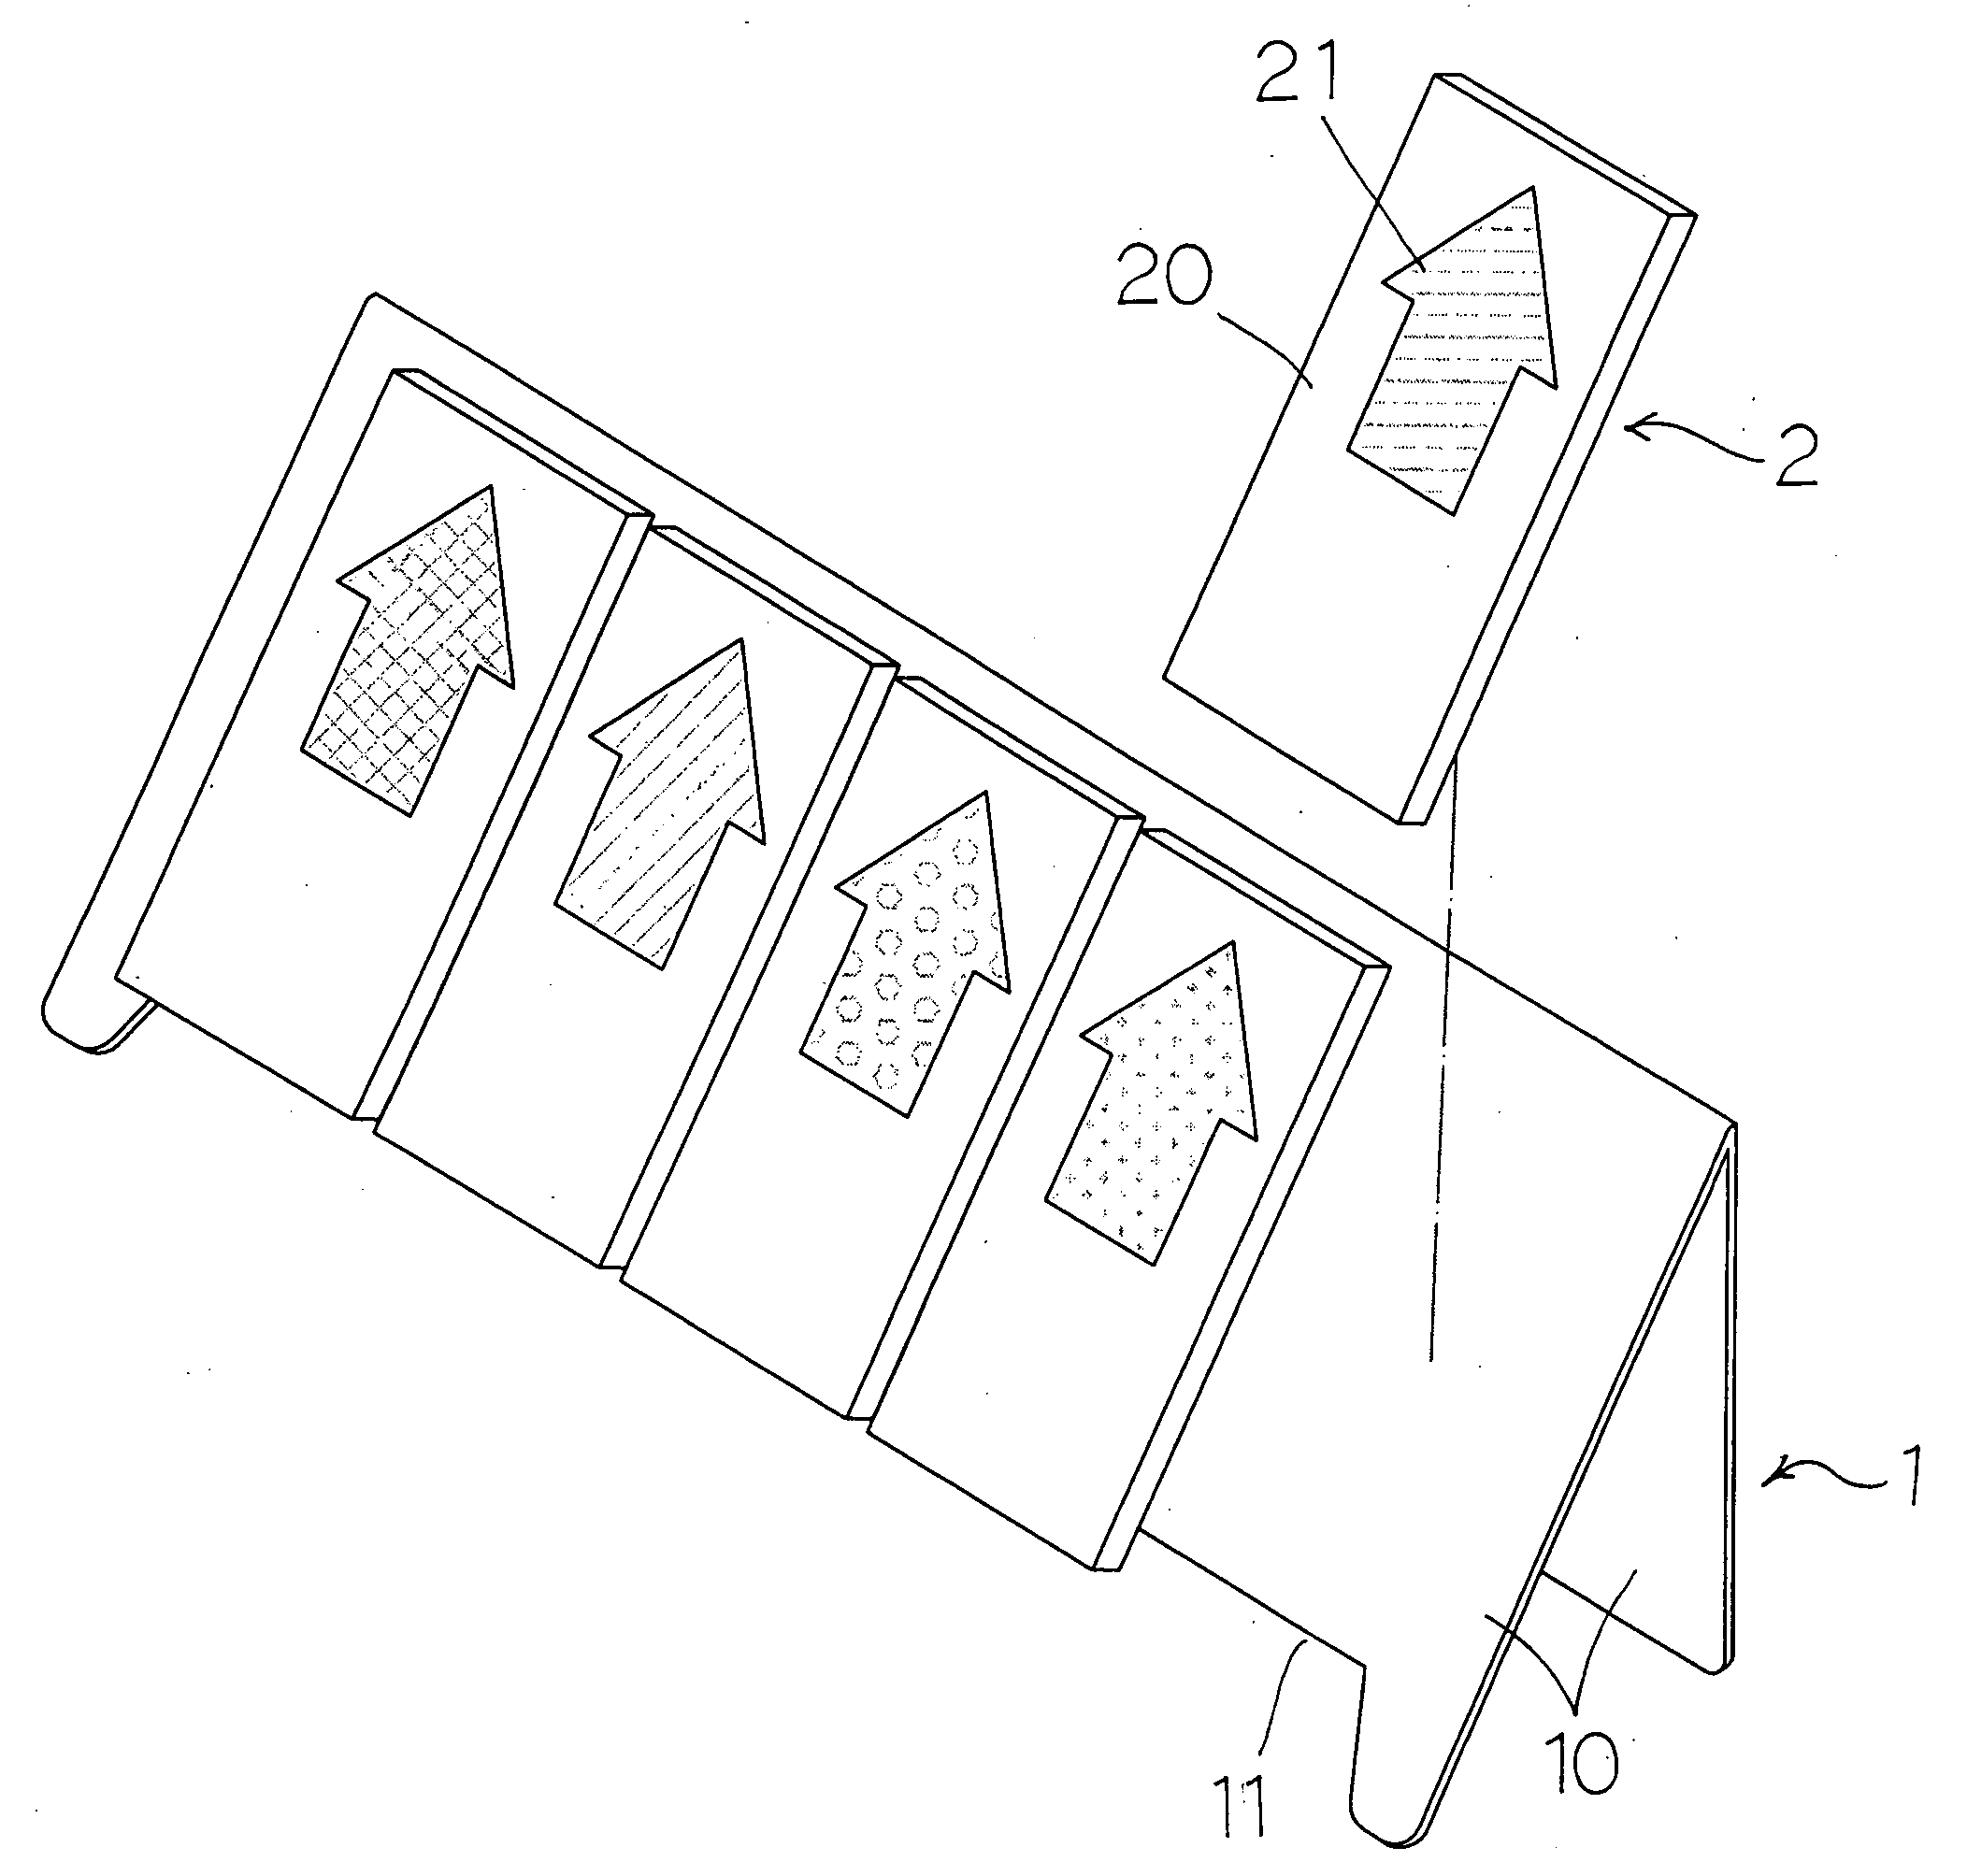 A memo paper structure